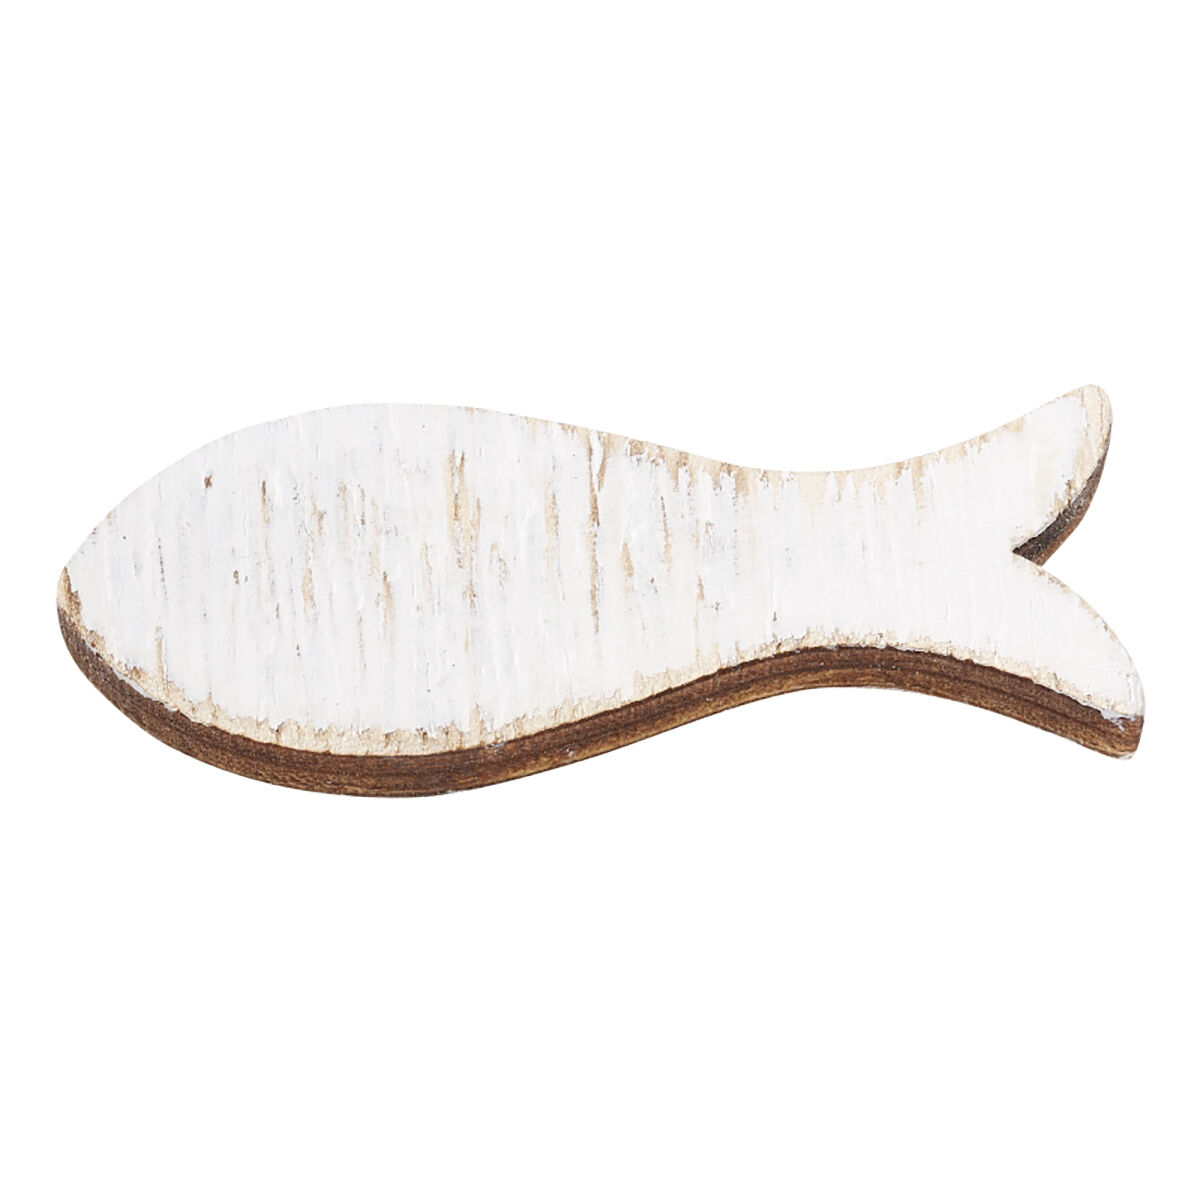 NEU Holz-Fische, 6 cm, Box mit 5 Stck, weiss